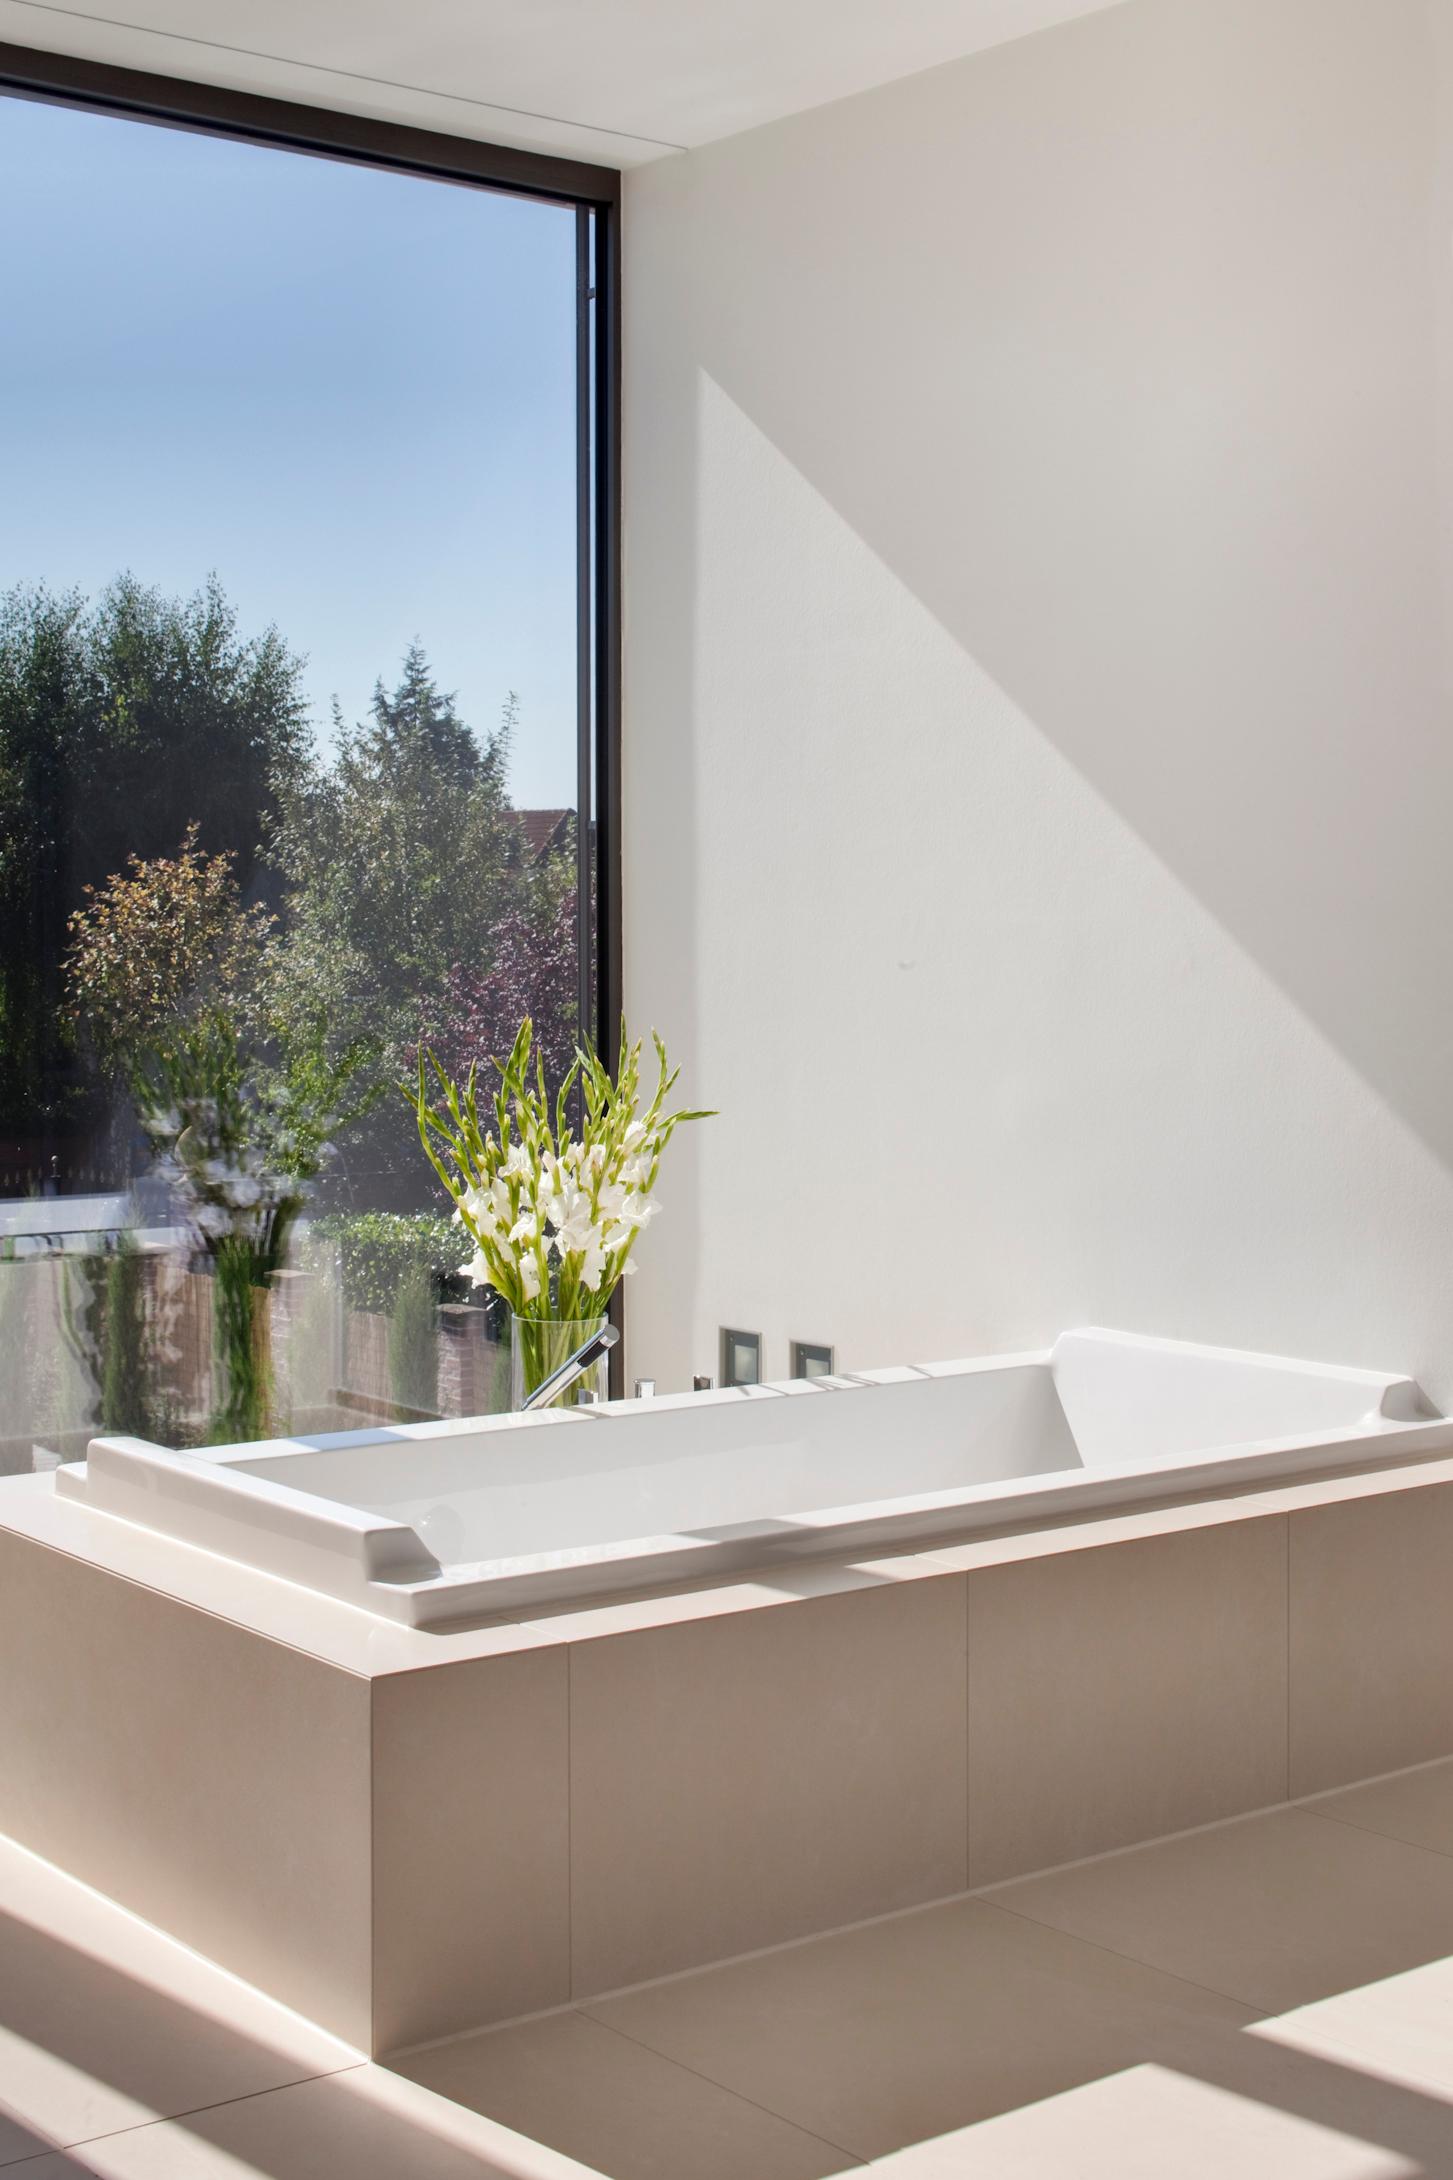 Badezimmer - Badewanne mit Blick #badewanne #badezimmer #bodenvase ©Skandella Architektur Innenarchitektur